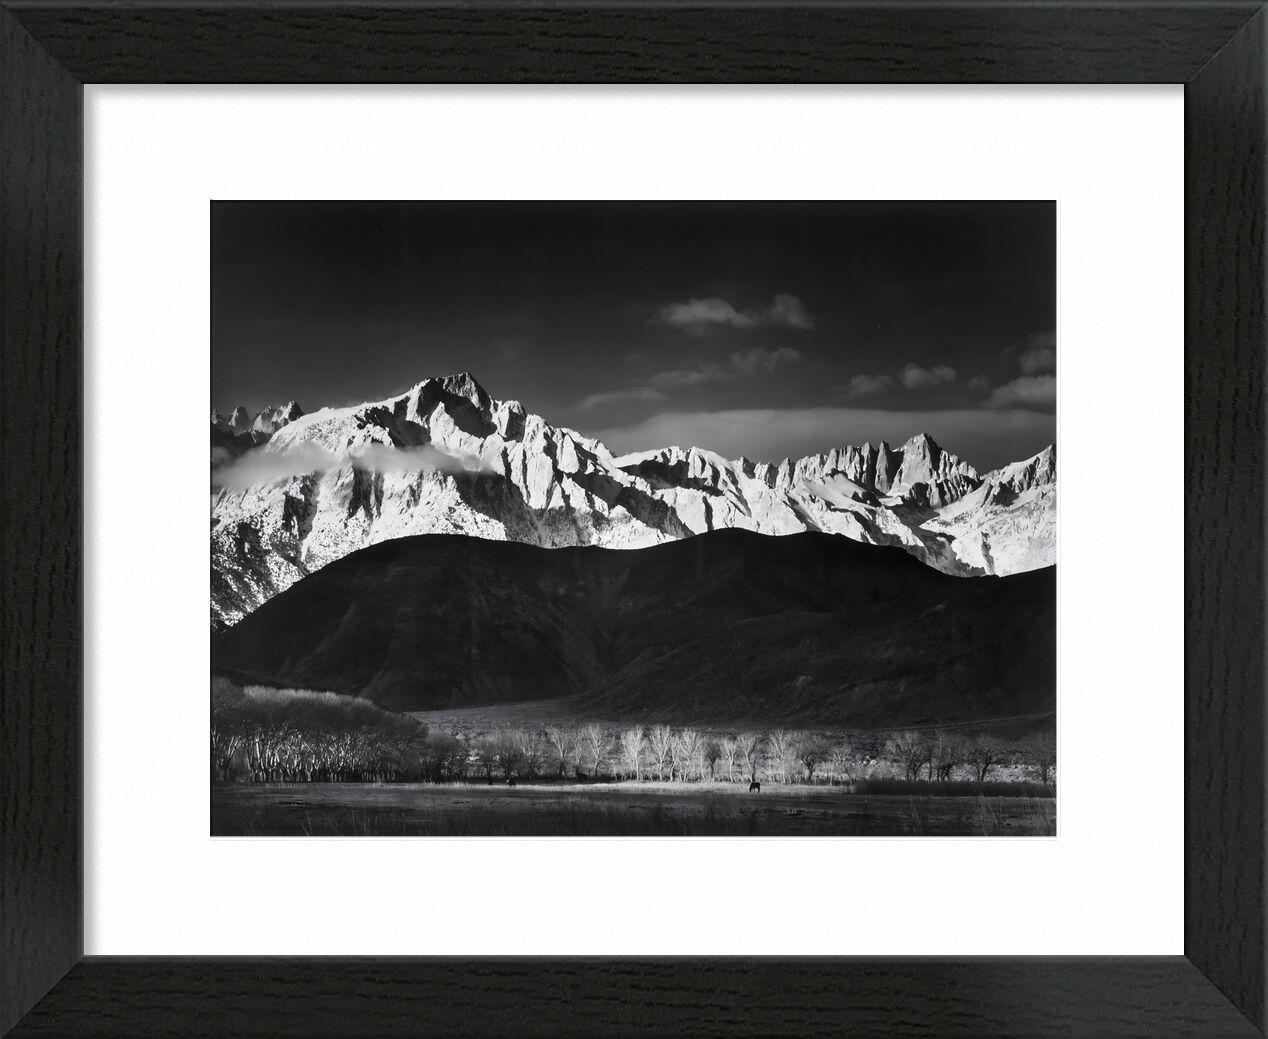 Winter Sunrise from Lone Pine, Sierra Nevada - Ansel Adams 1944 desde Bellas artes, Prodi Art, montañas, ANSEL ADAMS, cielo, blanco y negro, paisaje, bosque, lago, EE.UU., Sierra Nevada, adams